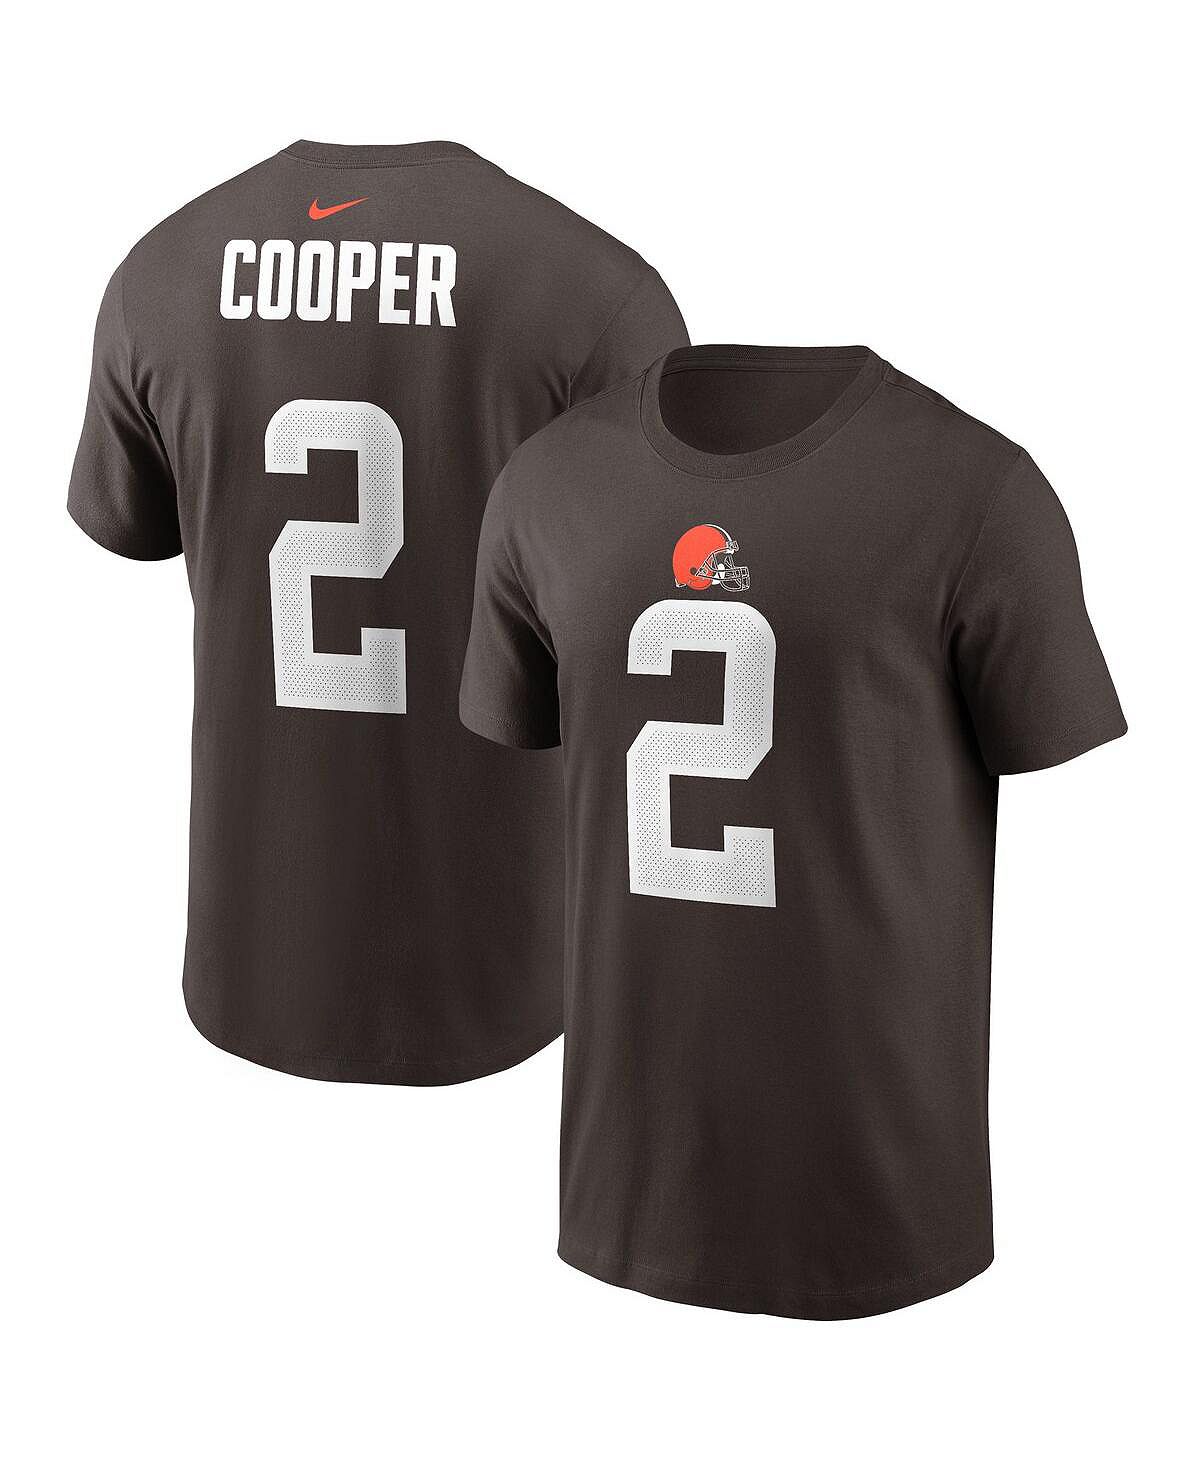 Мужская футболка amari cooper brown cleveland browns с именем и номером игрока Nike, коричневый